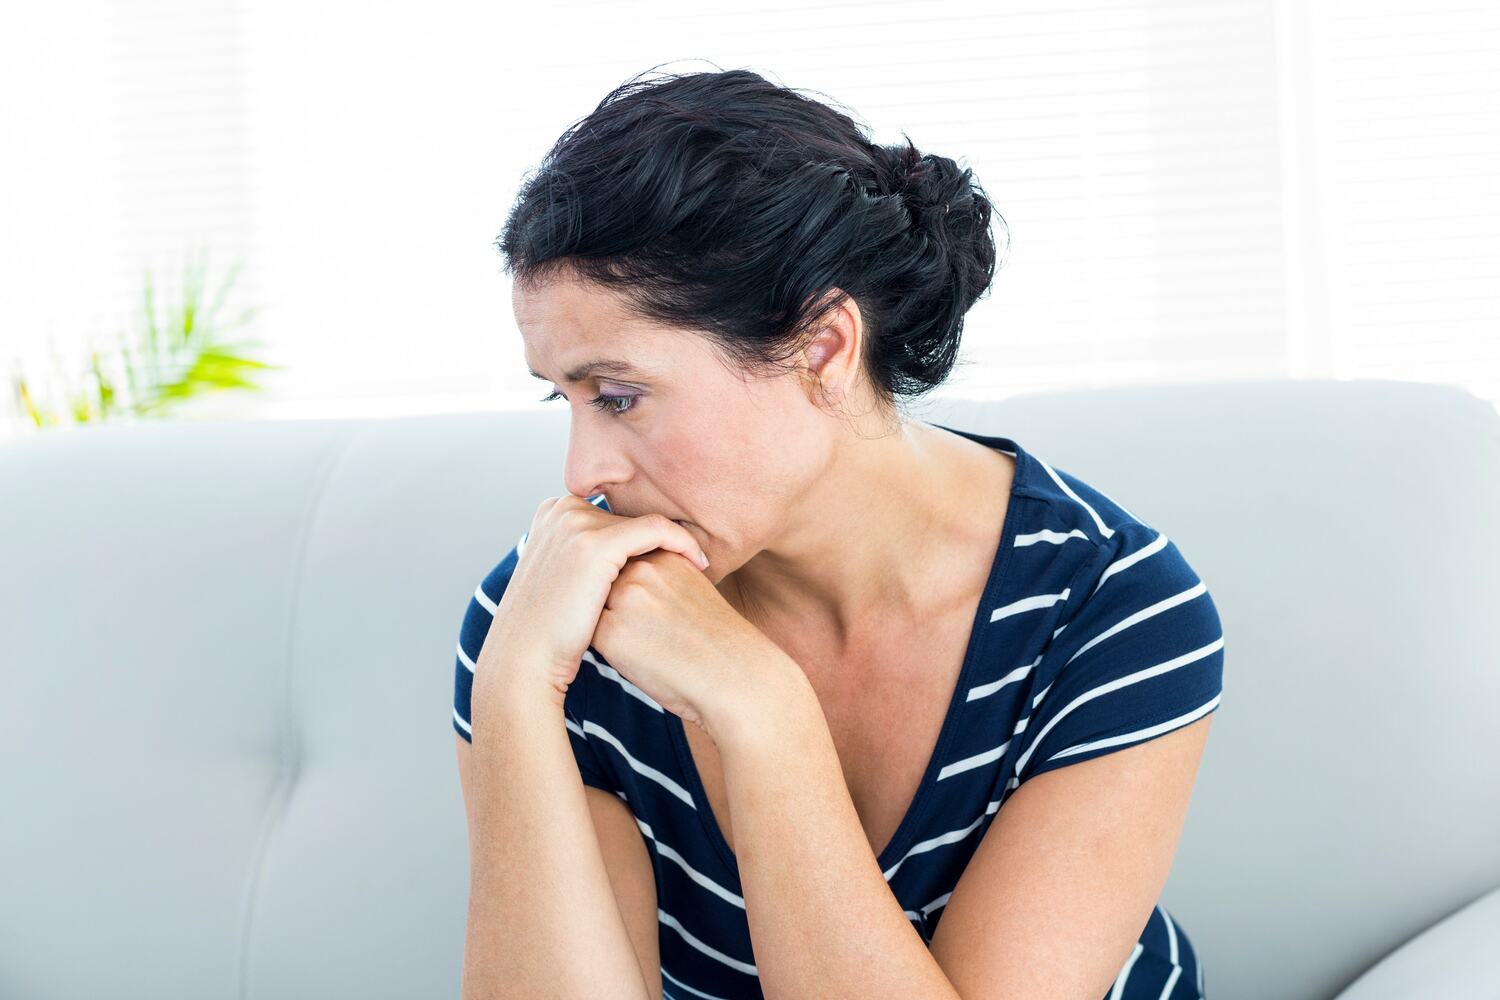    Расстройство мочеиспускания: причины и лечение недержания и непроизвольного подтекания мочи у женщин  